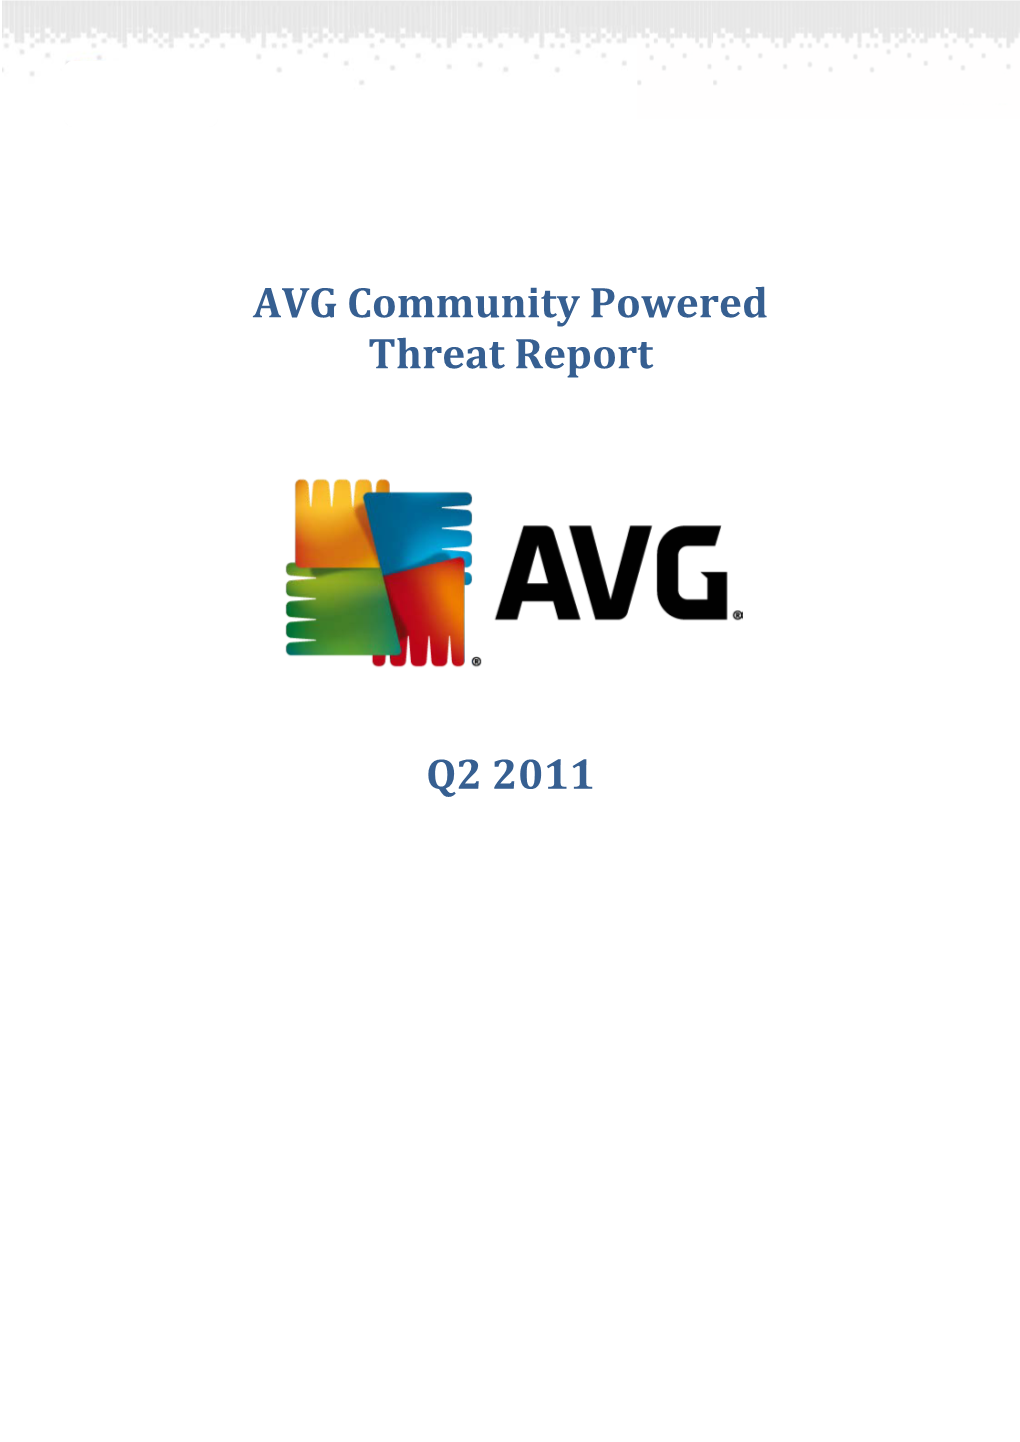 AVG Community Powered Threat Report – Q2 2011